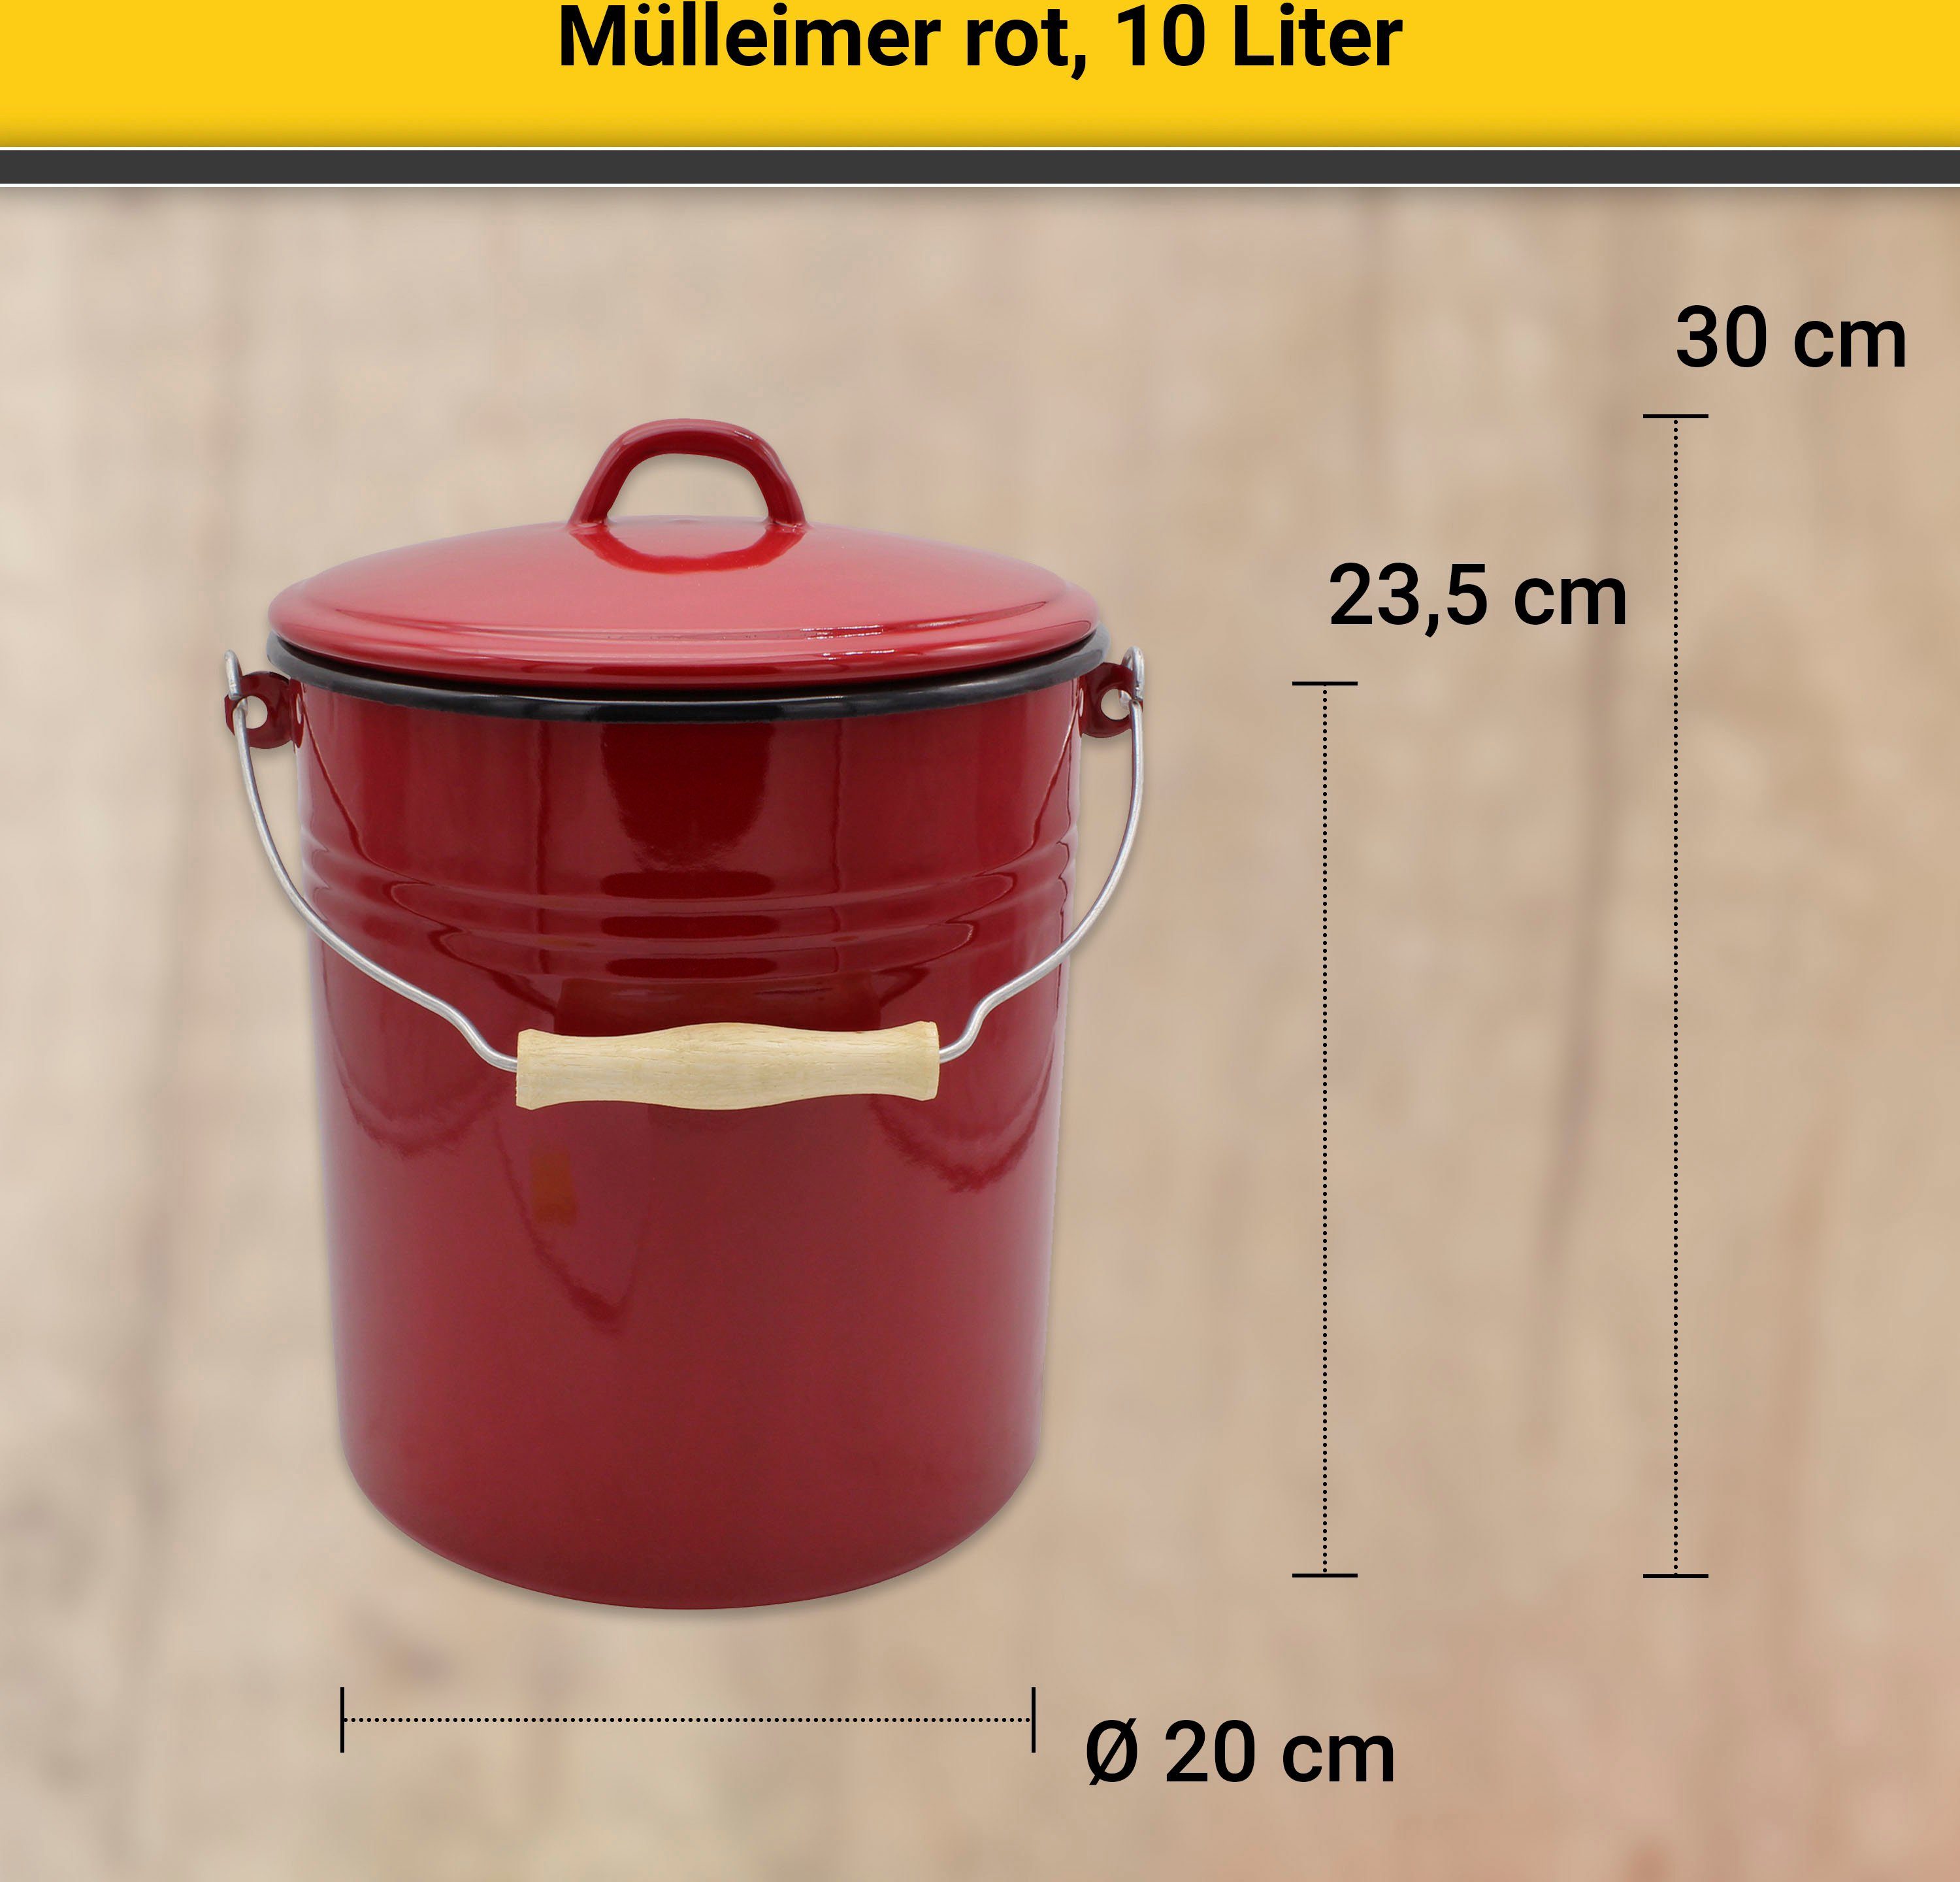 Krüger Mülleimer Triest, Stahlemaille, außen Made rot/innen Europe in Liter, 10 schwarz